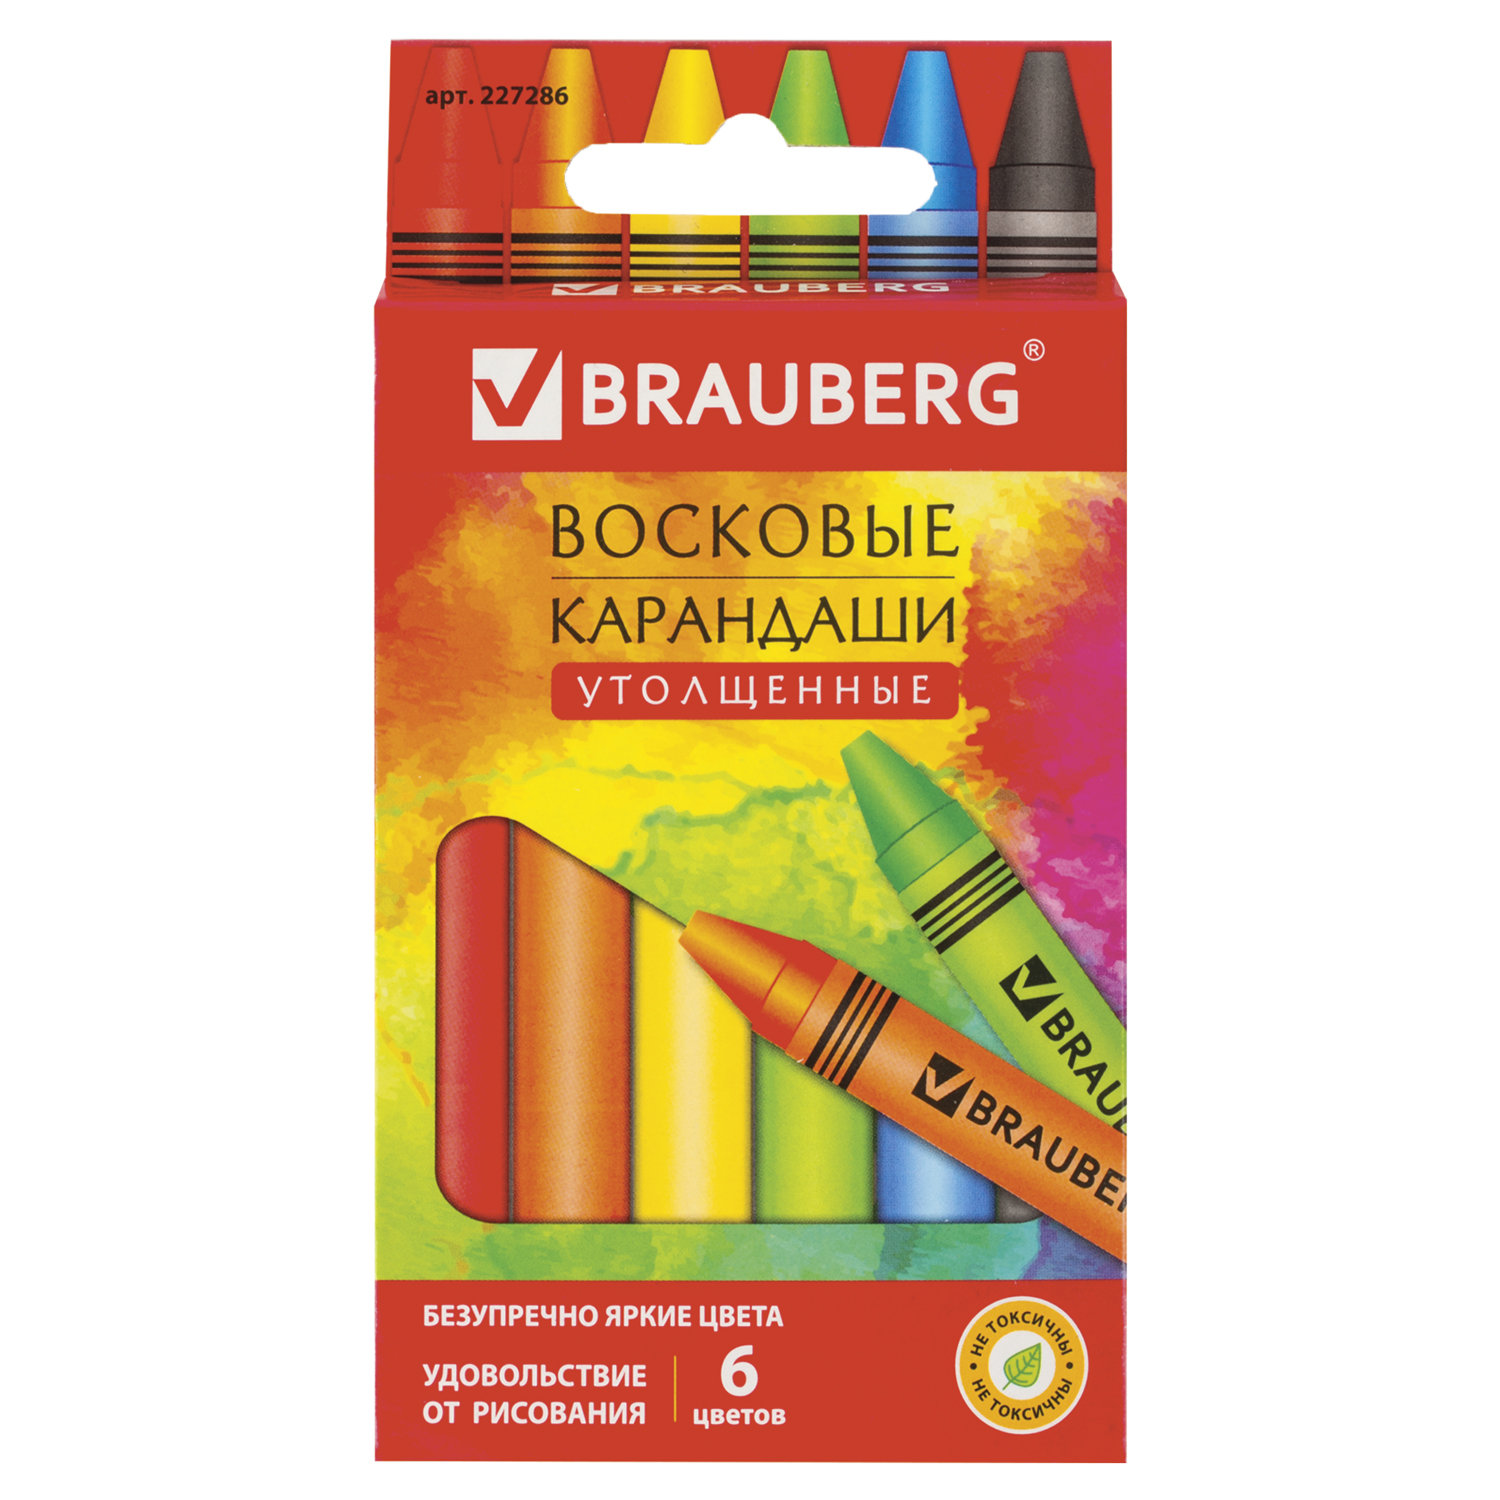 Купить Восковые карандаши утолщенные BRAUBERG АКАДЕМИЯ 6 цветов 227286, Greenwich Line,